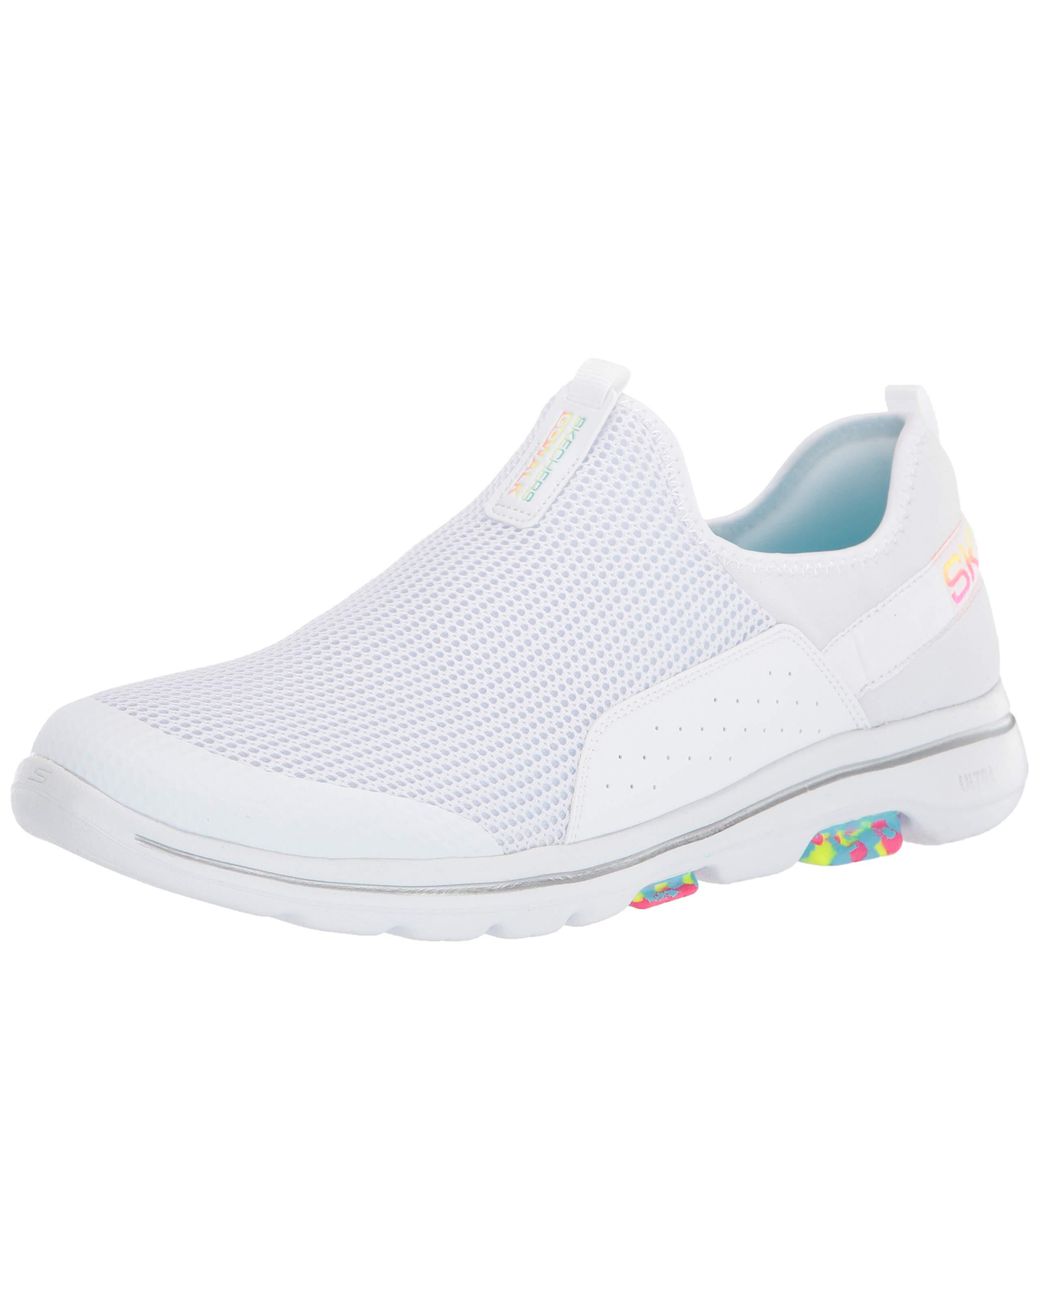 Skechers Go Walk 5-124034 Sneaker in White - Save 24% - Lyst